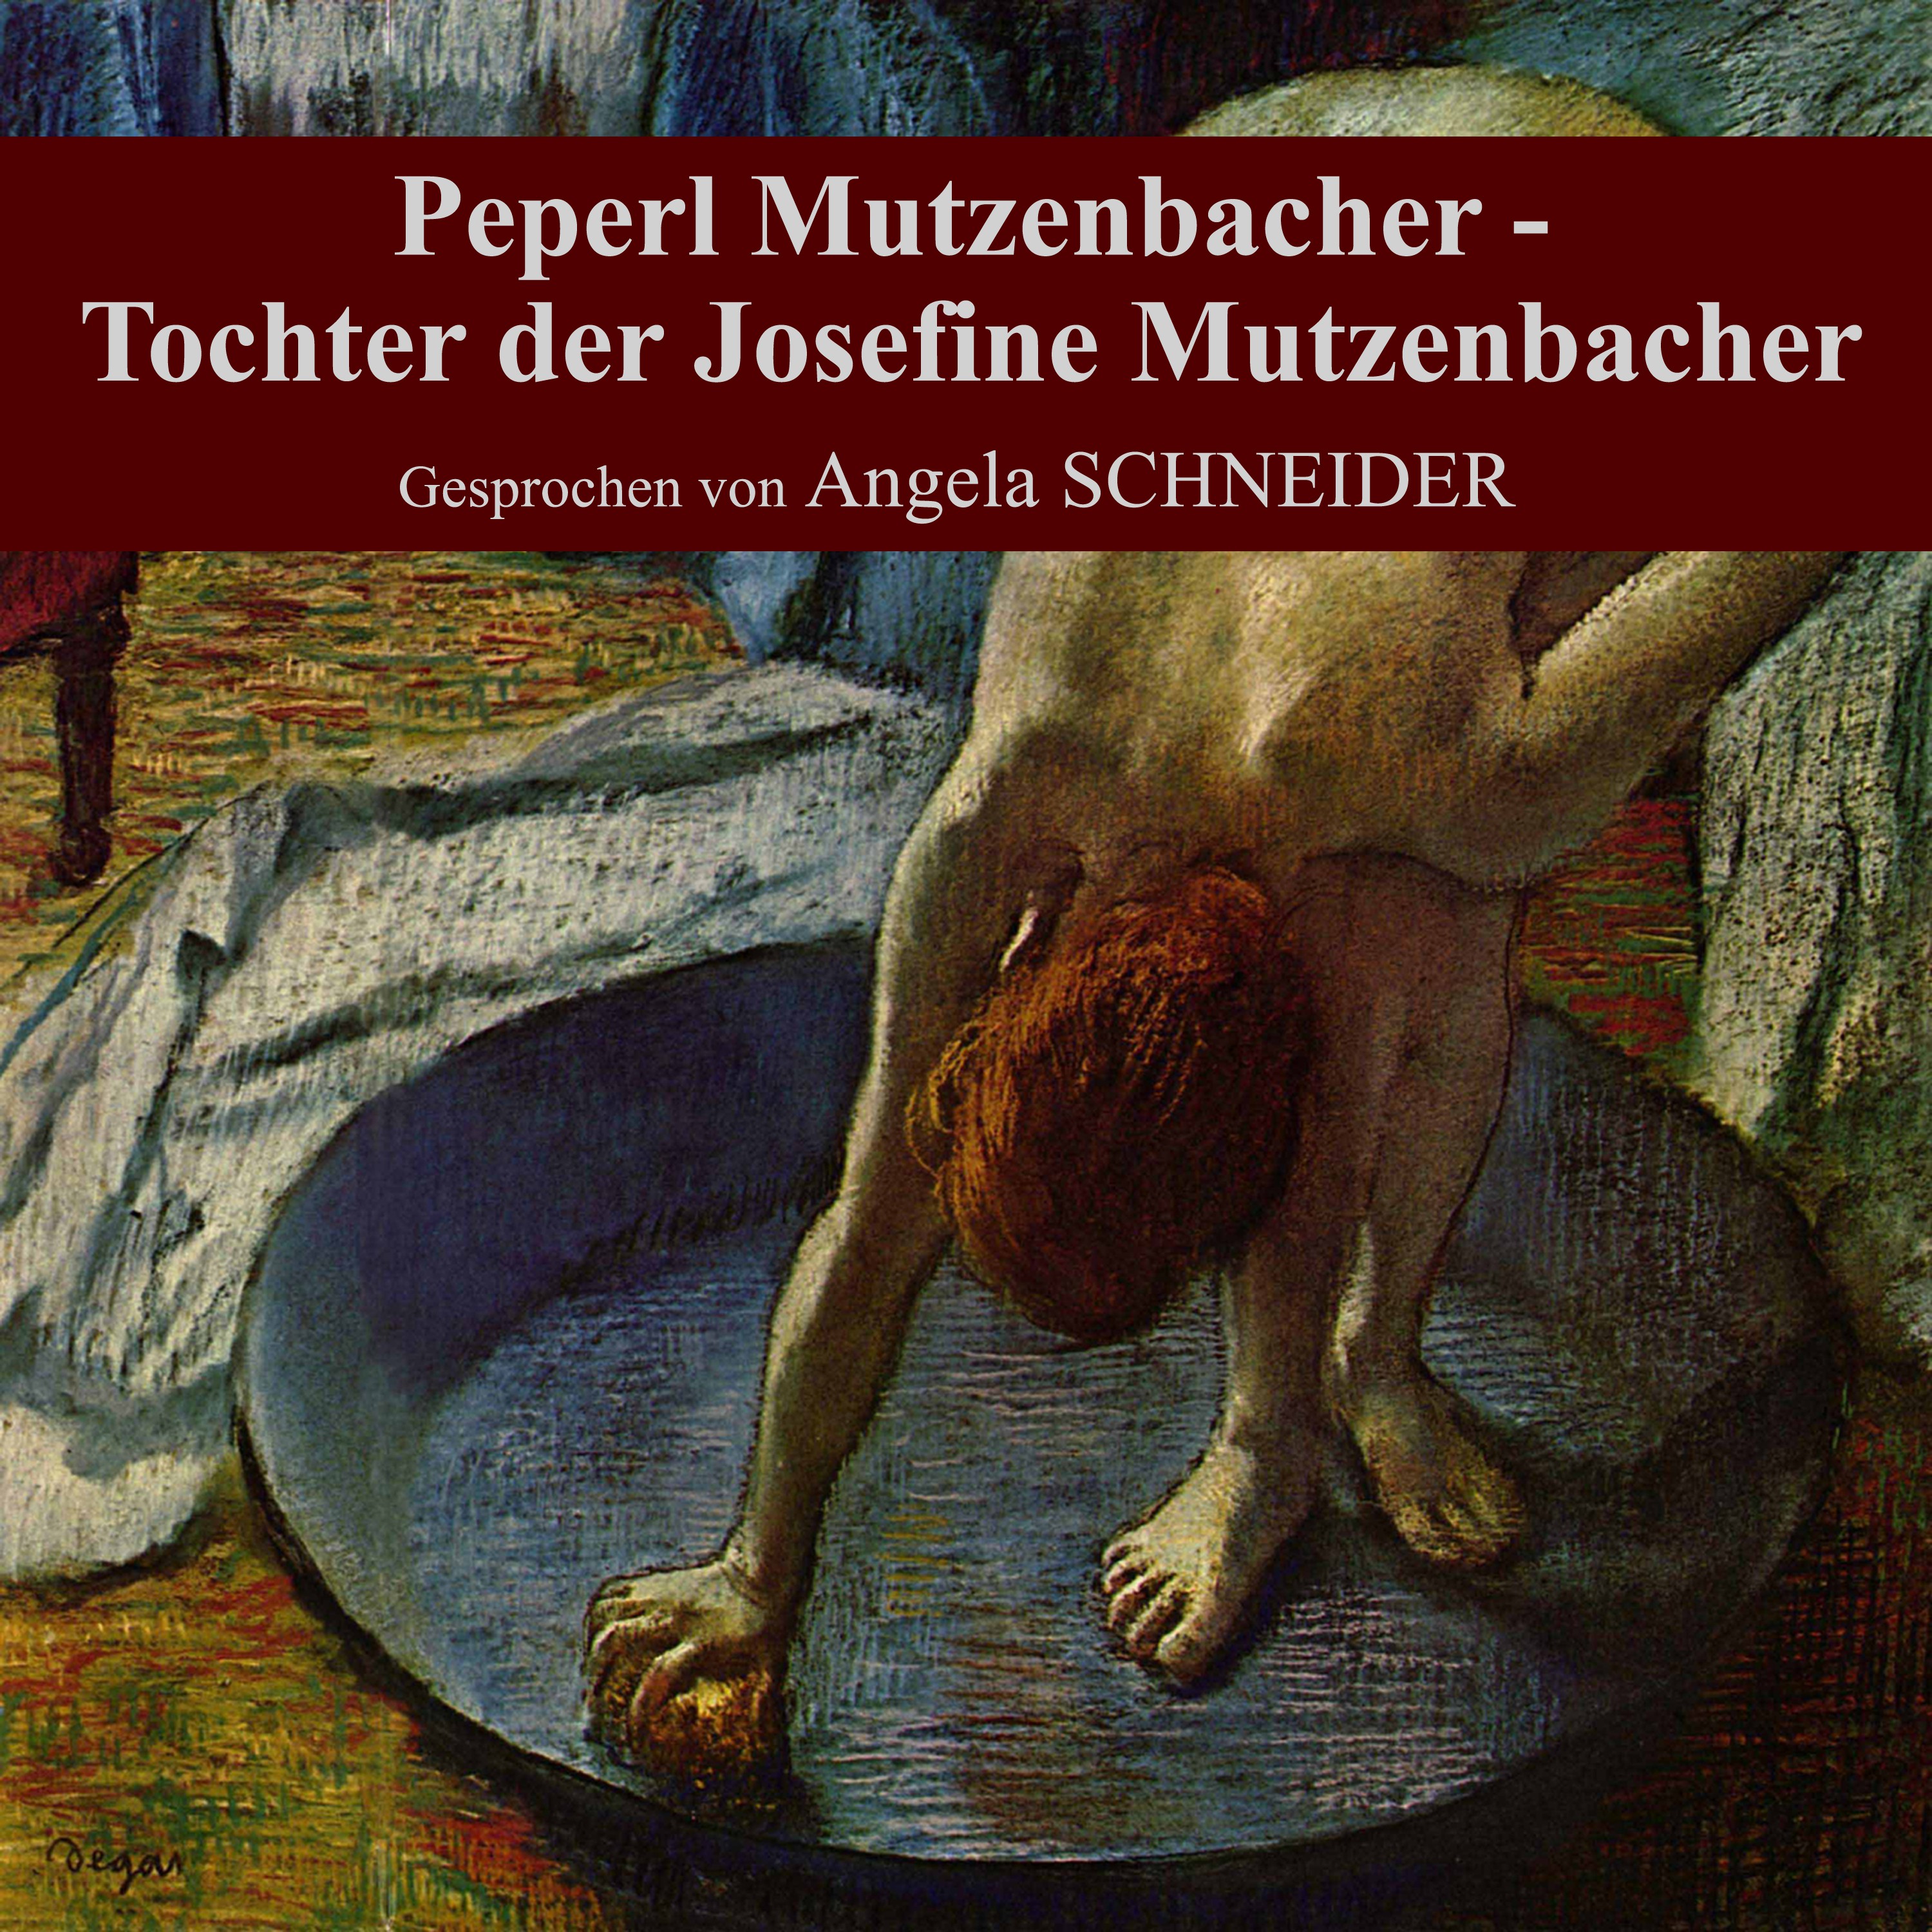 Peperl Mutzenbacher - Tochter der Josefine Mutzenbacher